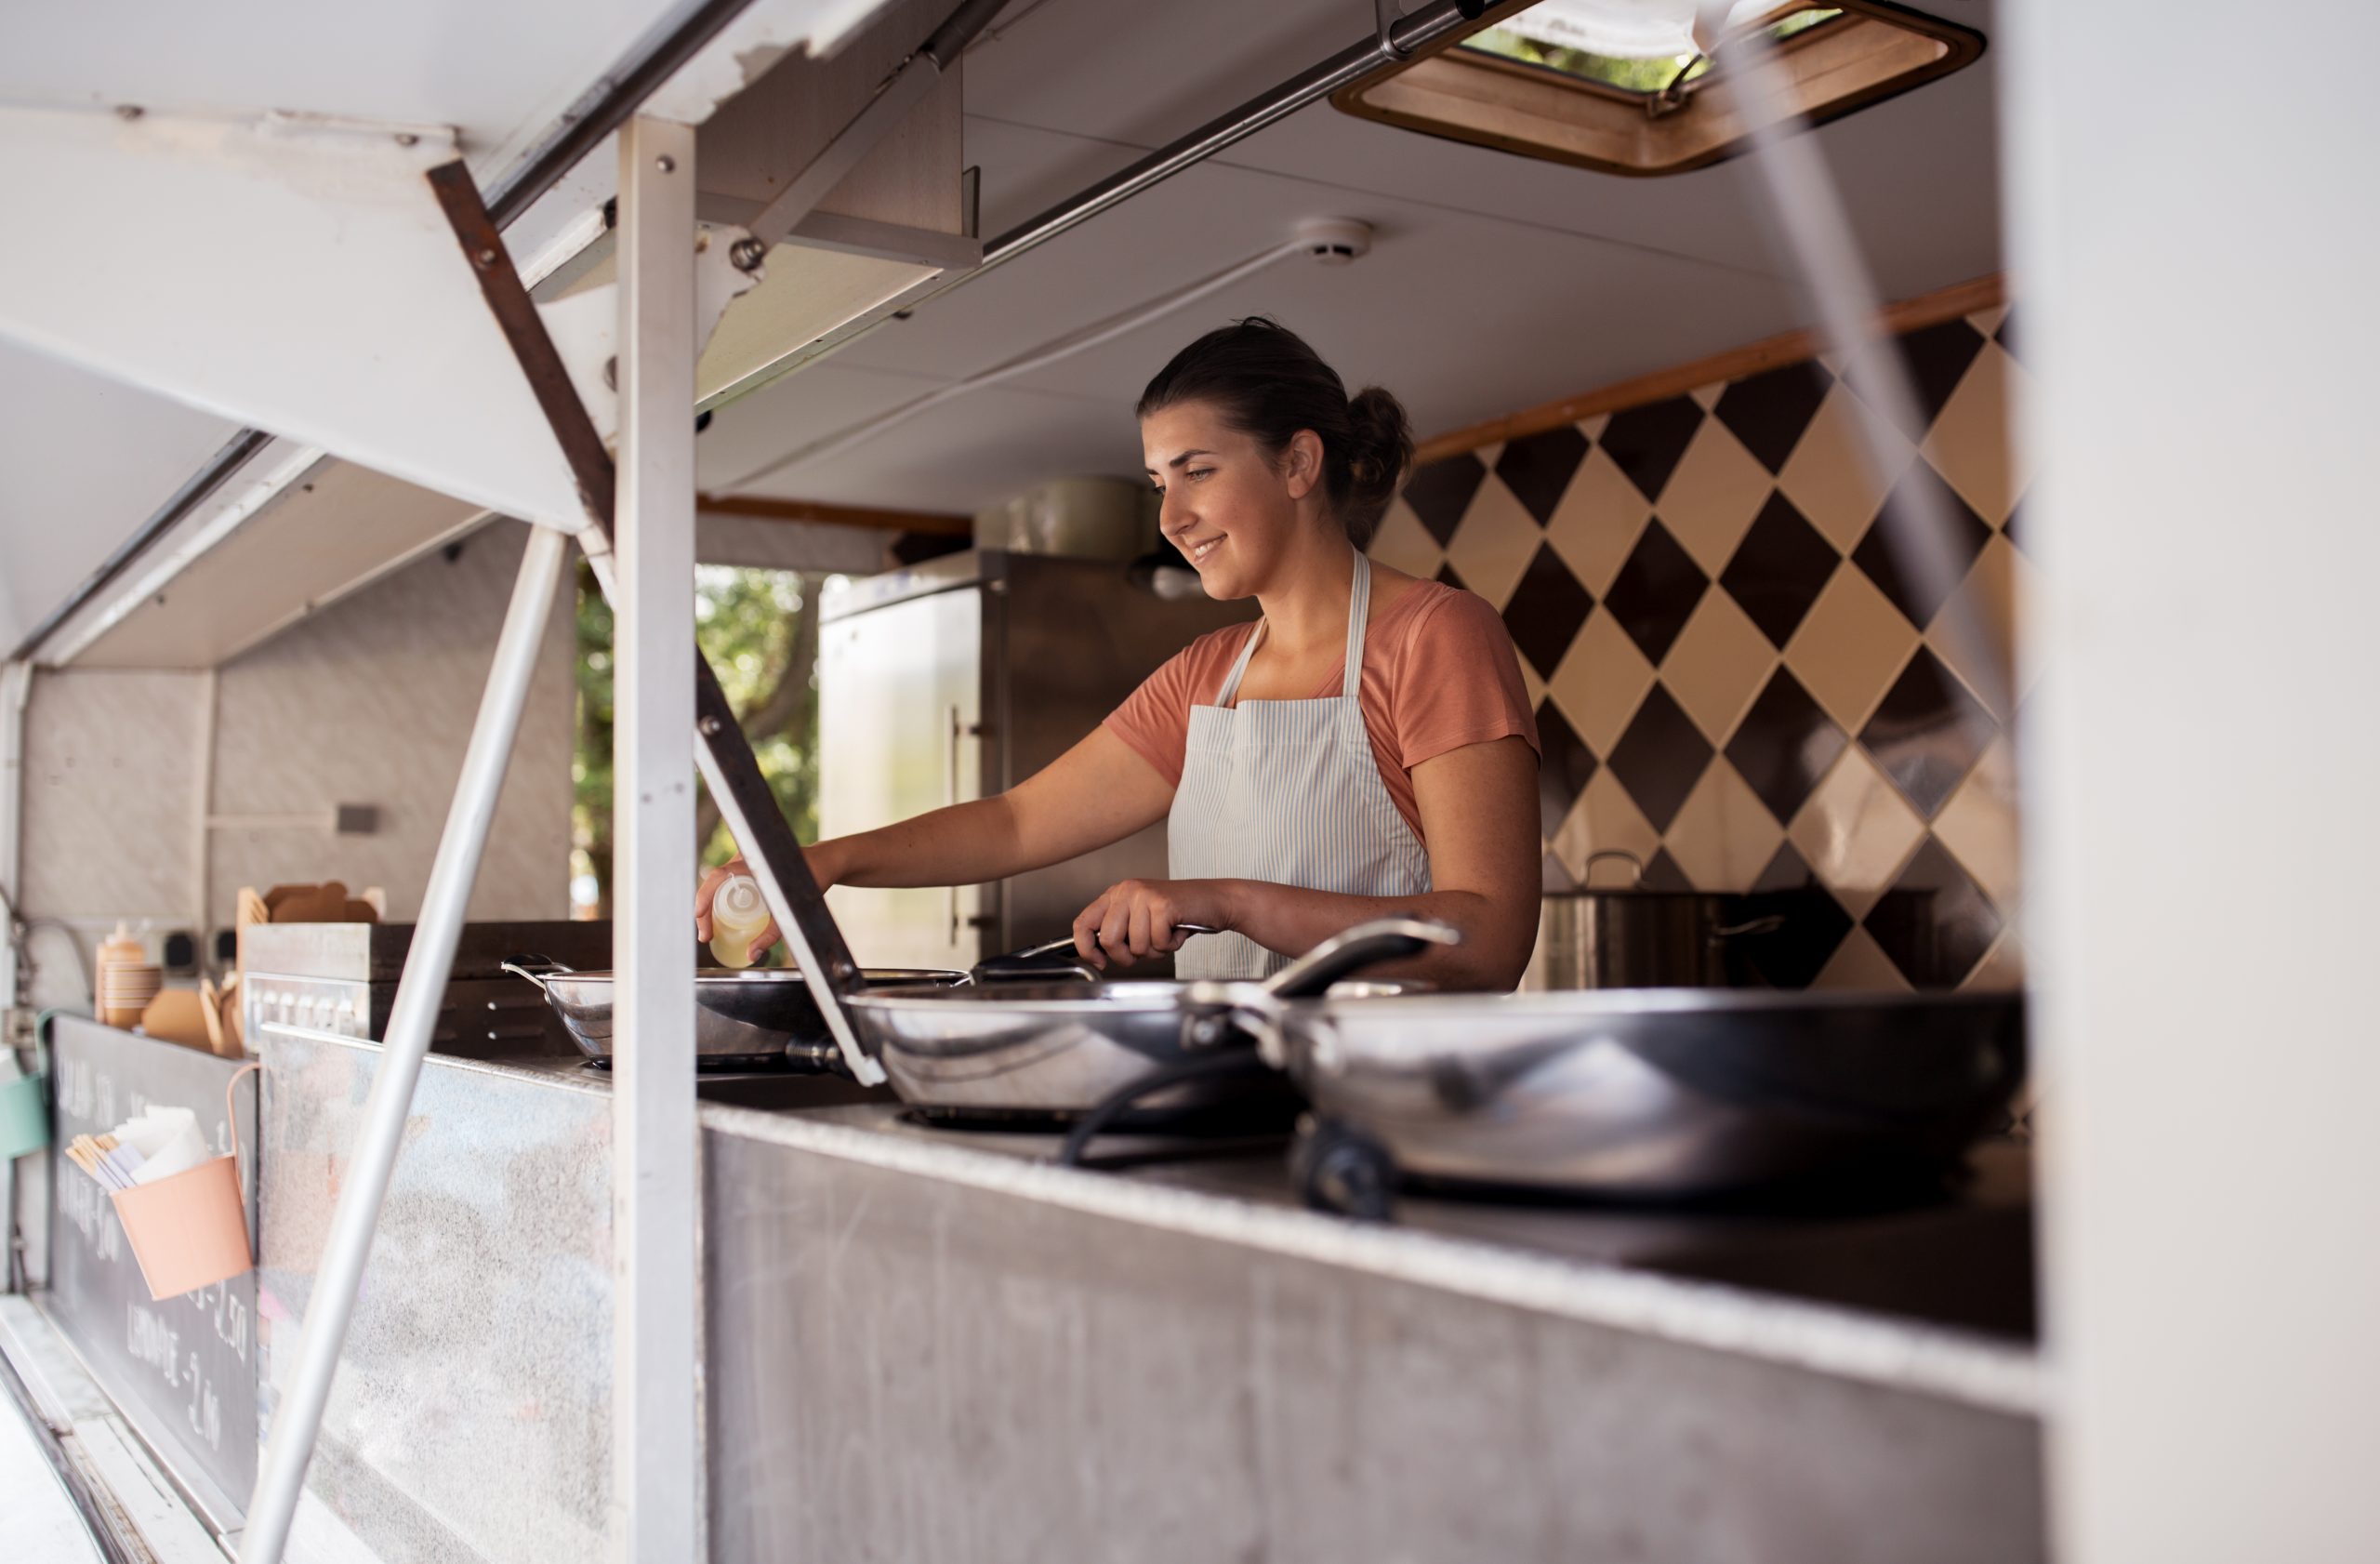 A Food Truckok rendkívül alkalmasak arra, hogy céges, vagy akár magánrendezvényeket bonyolítsanak le.